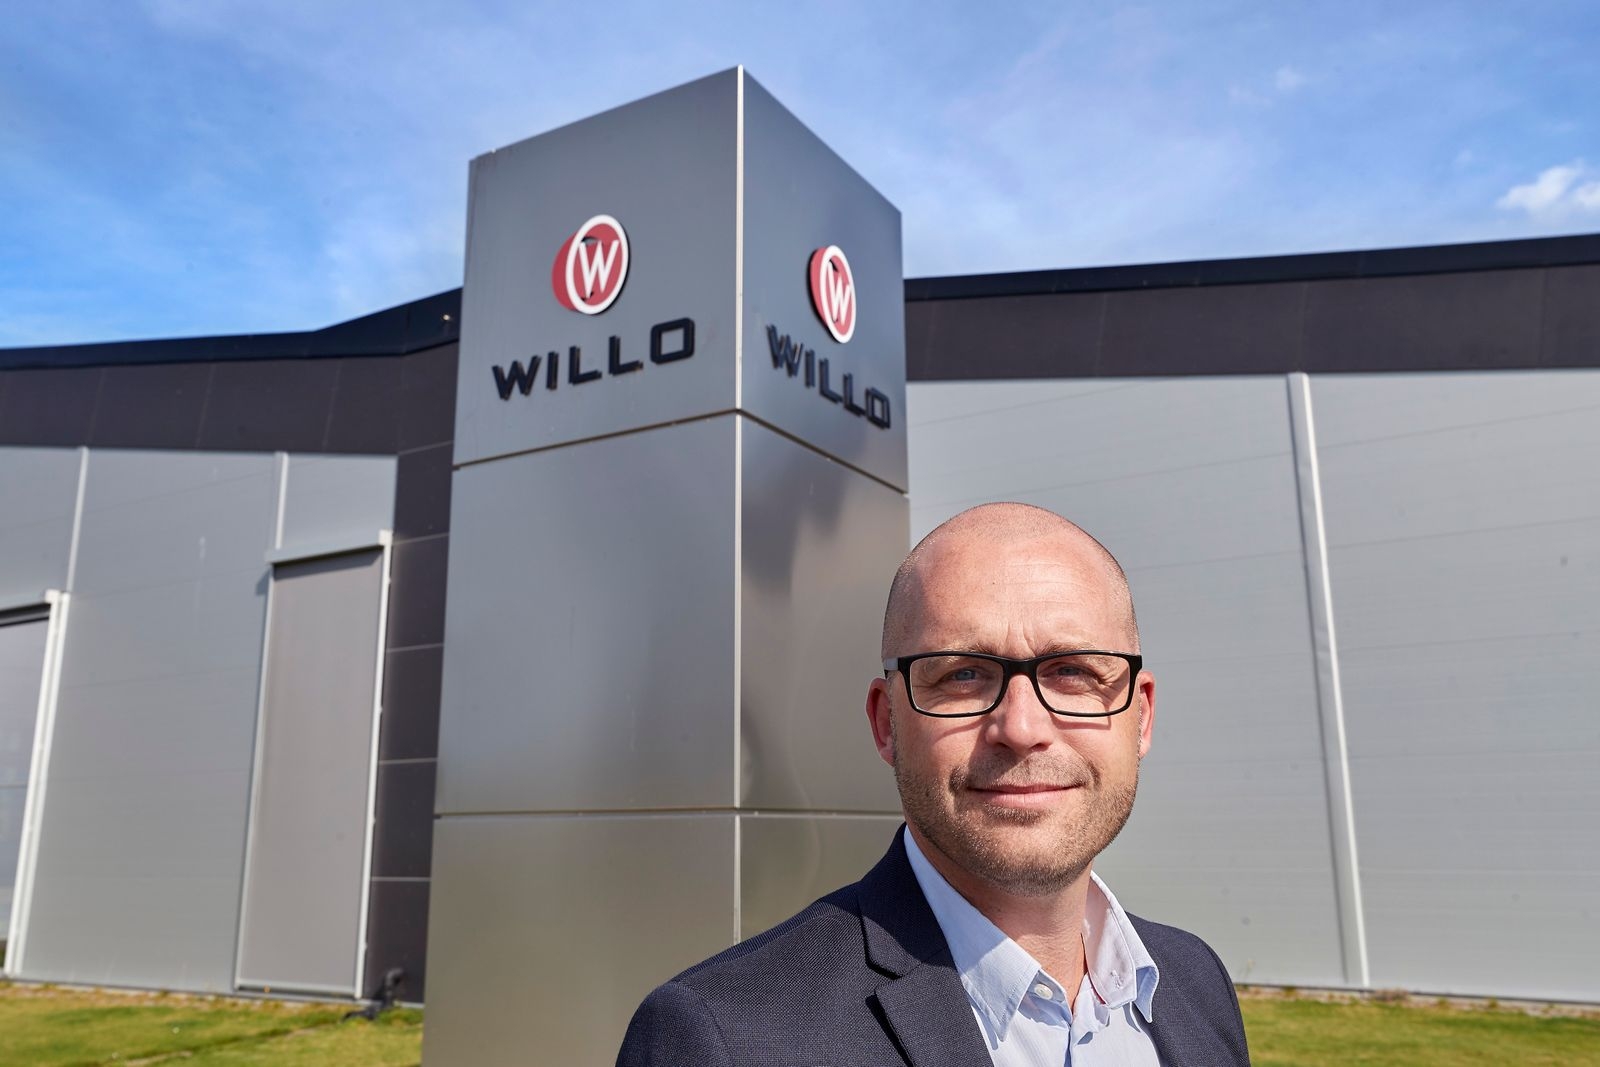 Willo ska lämna Räppe – bygger ny fabrik i Öjaby